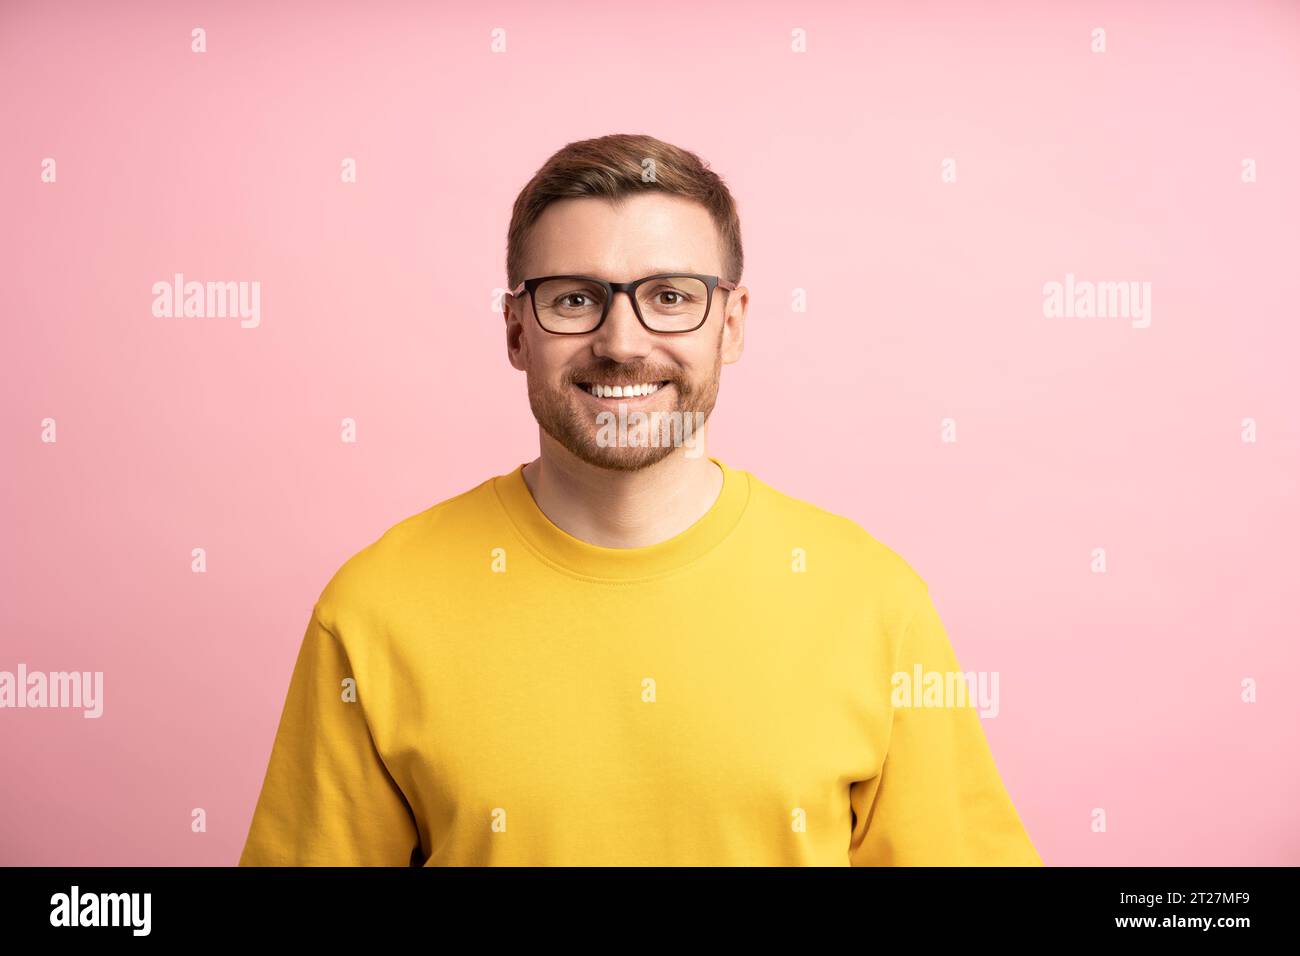 Zufriedener Mann lächelt, Porträt auf rosa Studiowand. Gebildeter Kerl, kluger Profi, schaut in die Kamera Stockfoto